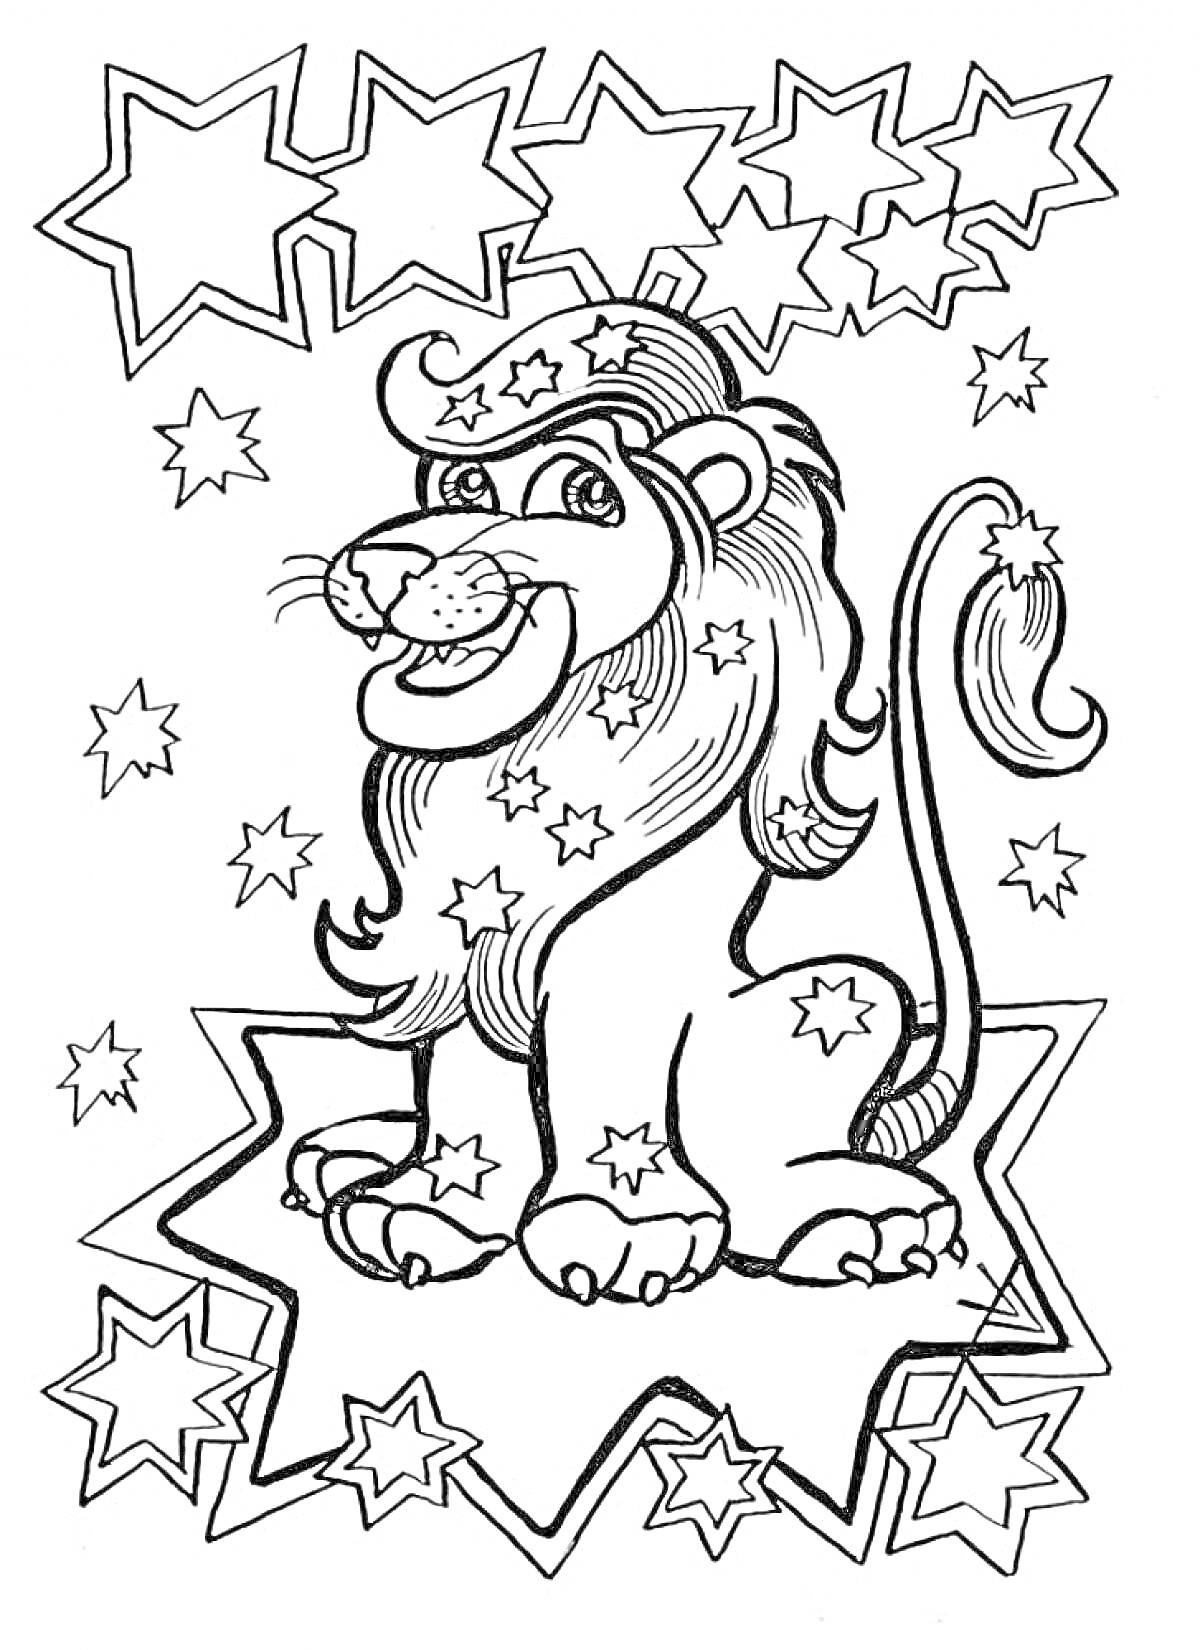 Лев со звездами - лев, украшенный звездами, сидит в центре, окружен звездами различных размеров